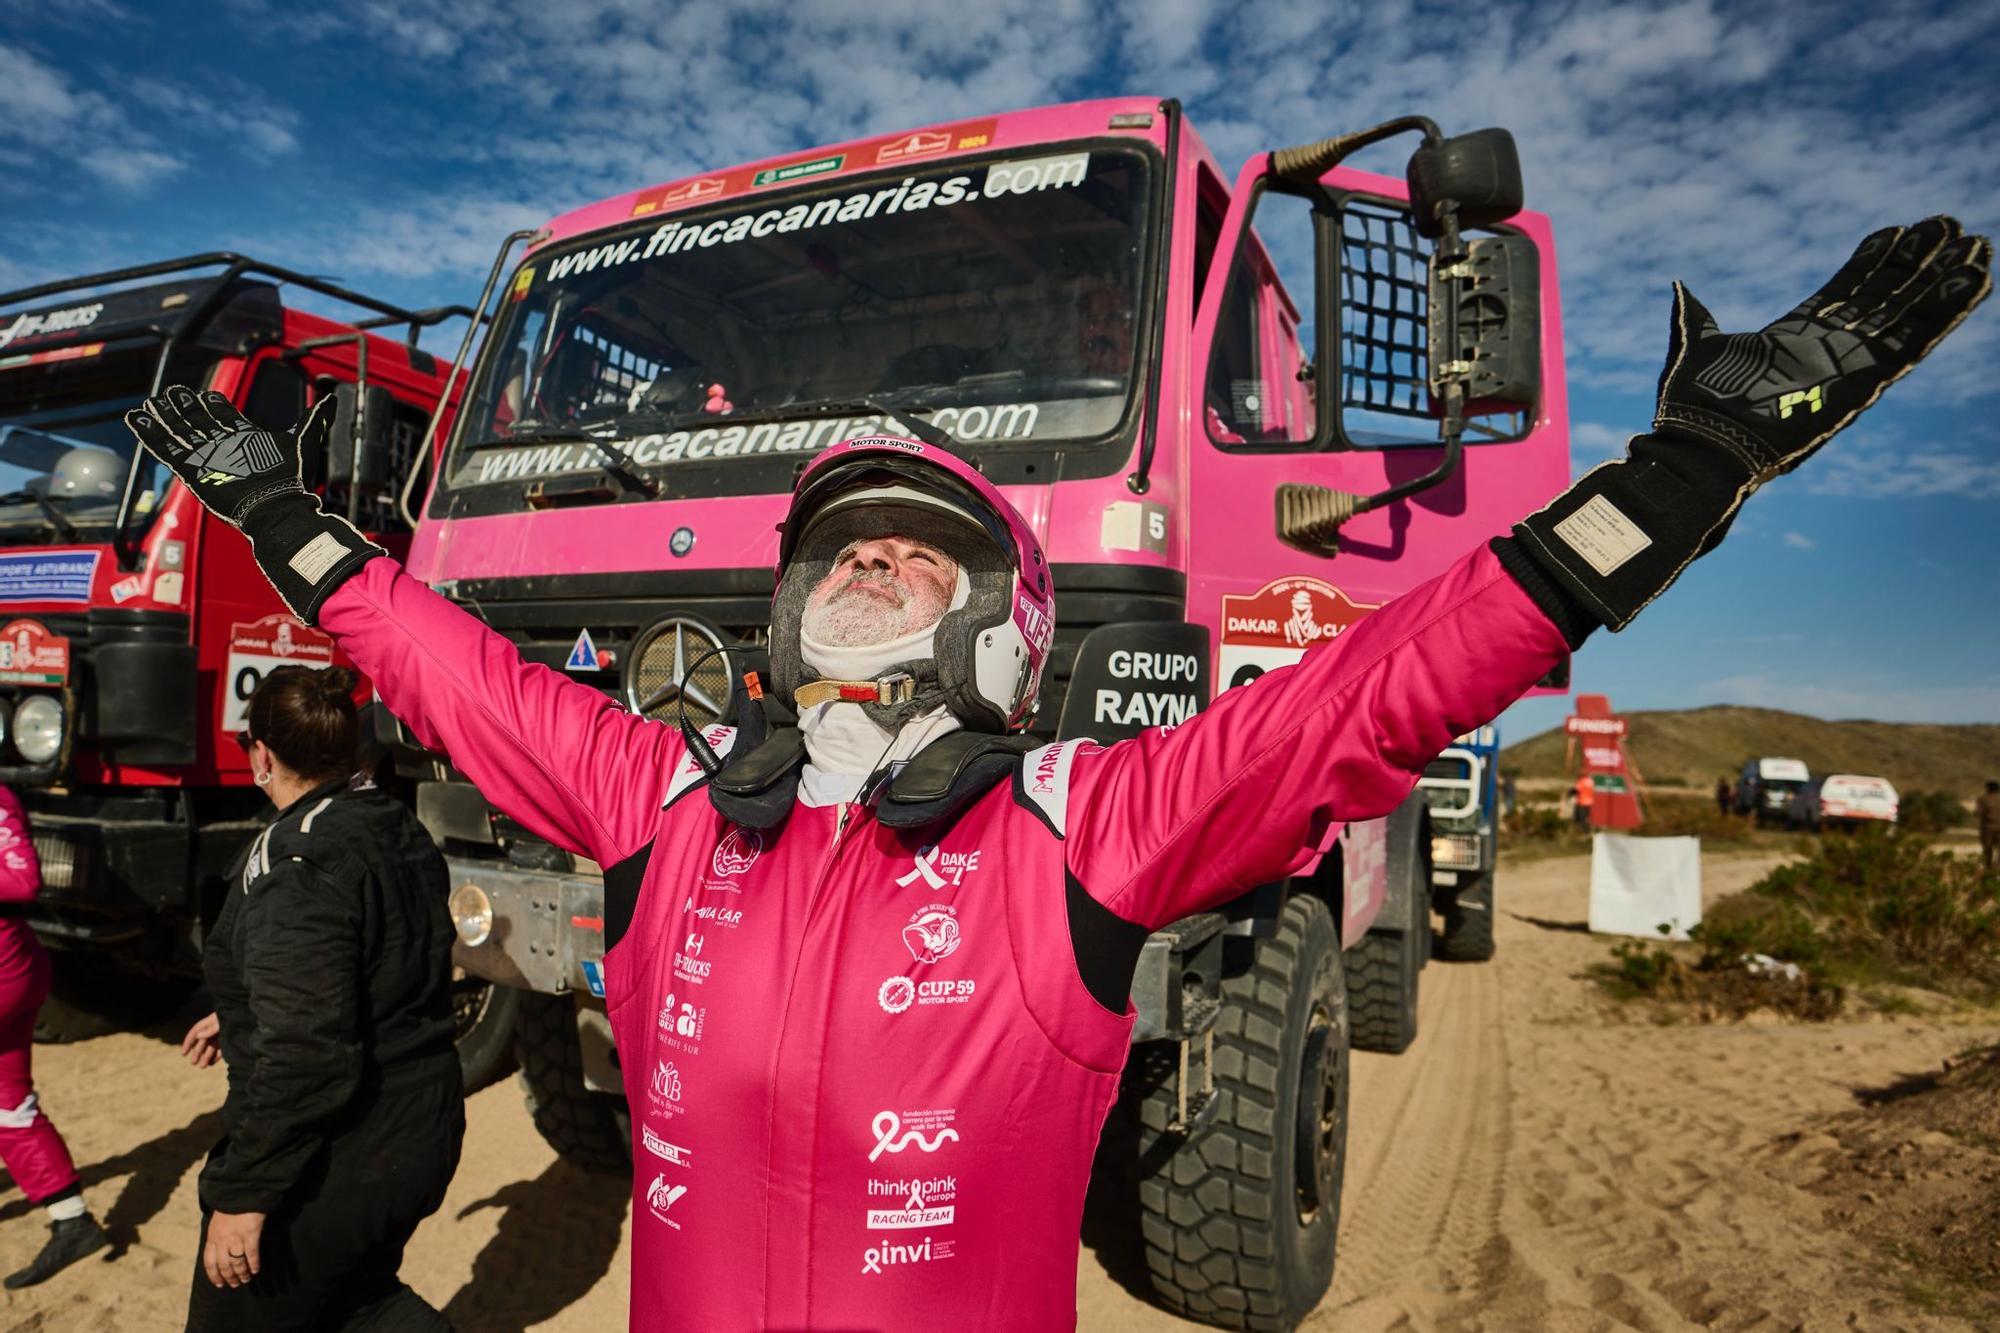 Rafa Lesmes termina el Dakar Classic tras proclamarse campeón en la categoría de camiones